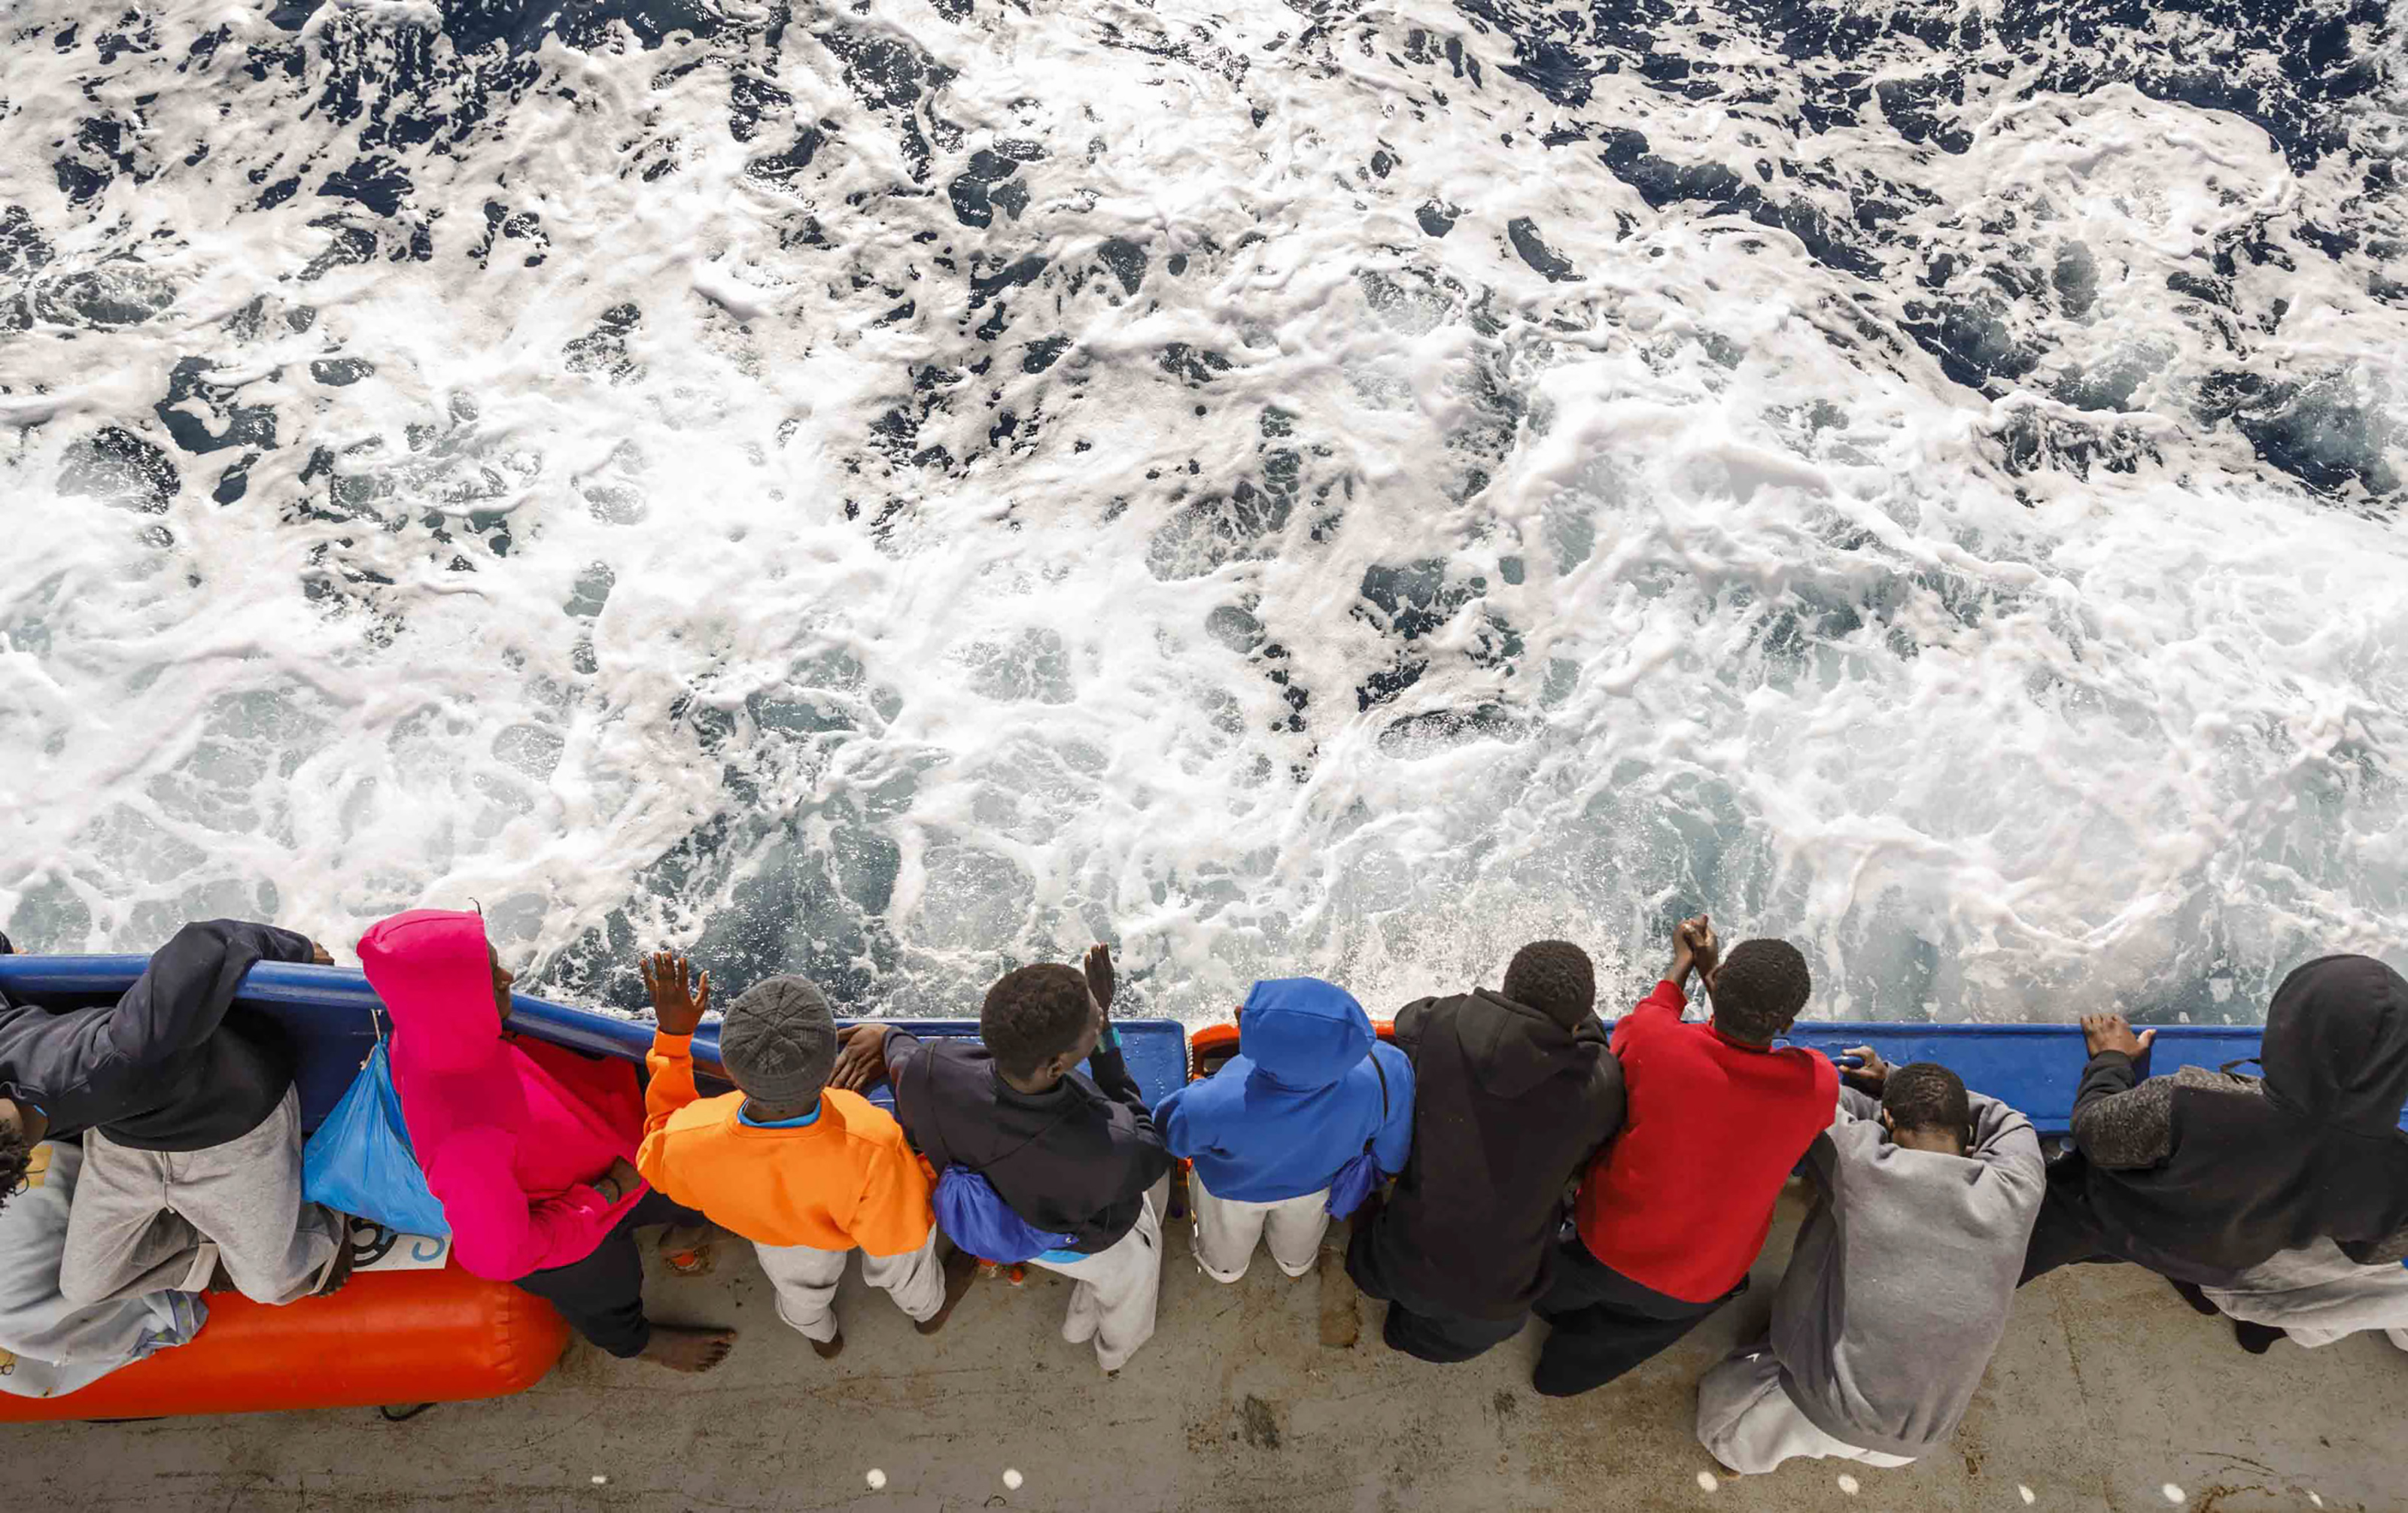 Menedékkérőket szállító hajó szenvedett balesetet Dél-Olaszországban, legalább negyvenhárman meghaltak